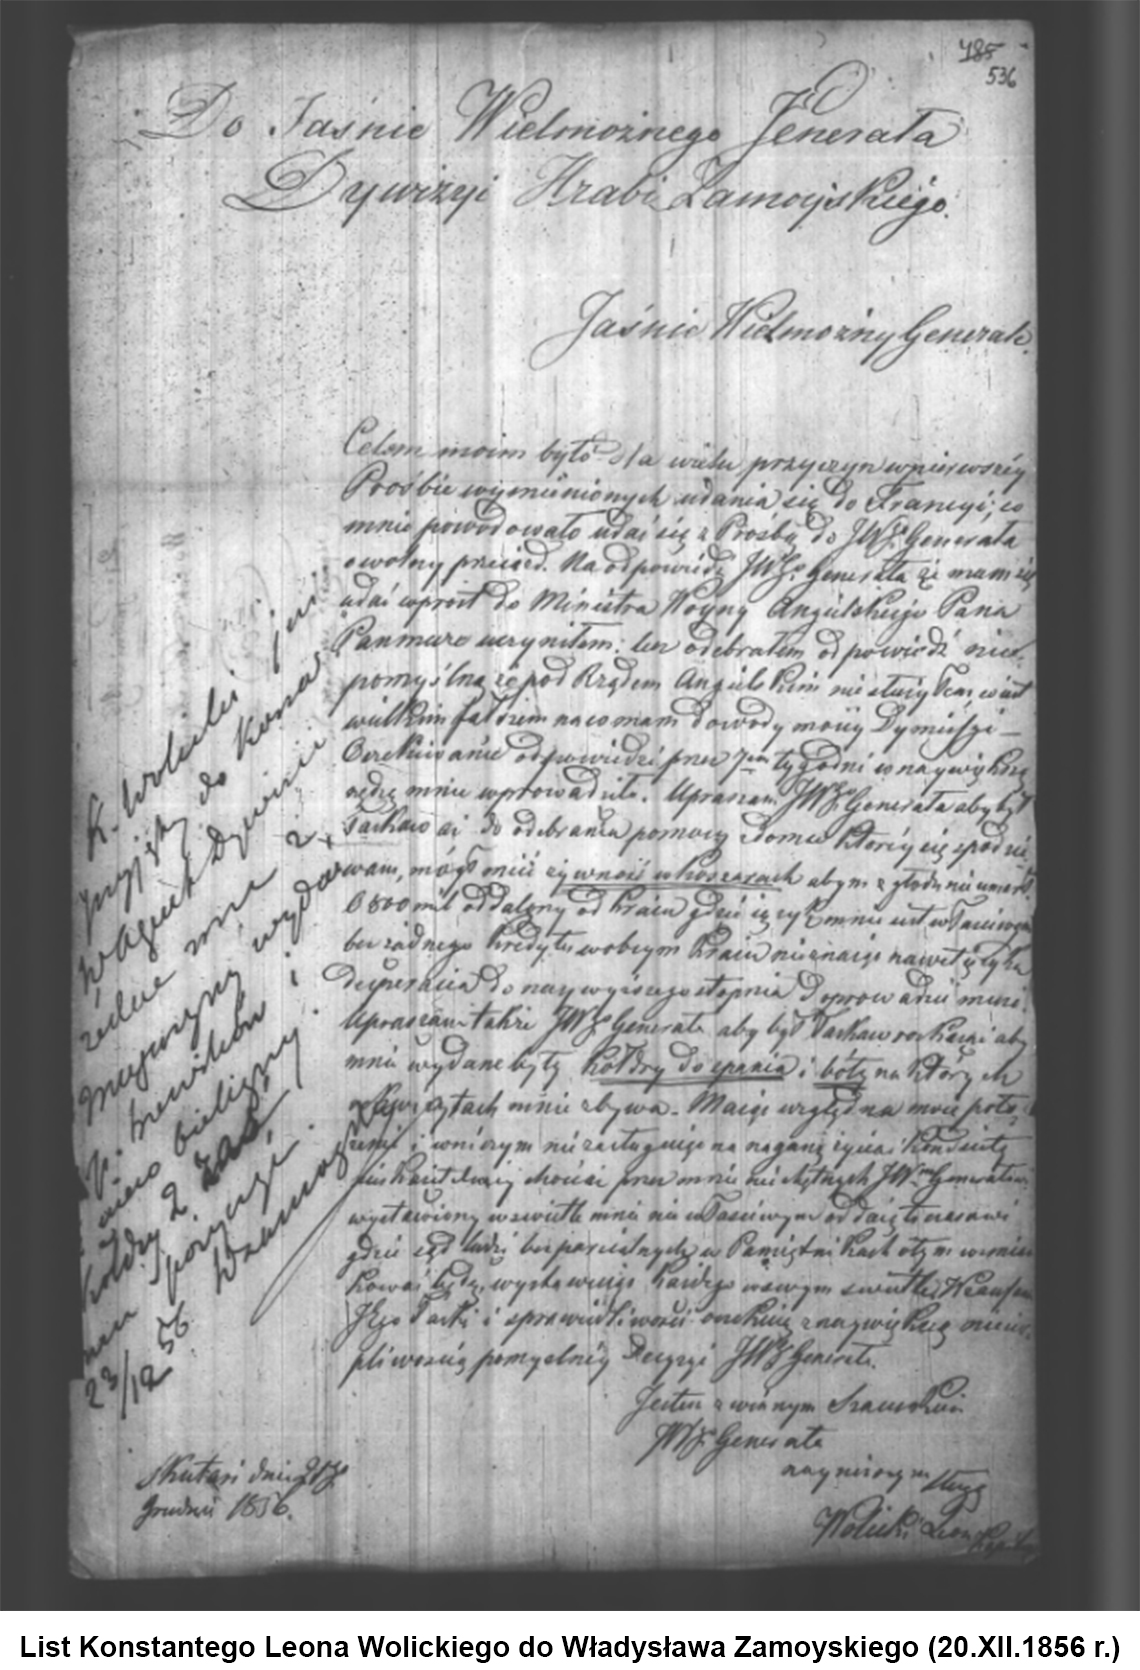 List Konstantego Leona Wolickiego do Władysława Zamoyskiego (20.XII.1856 r.)